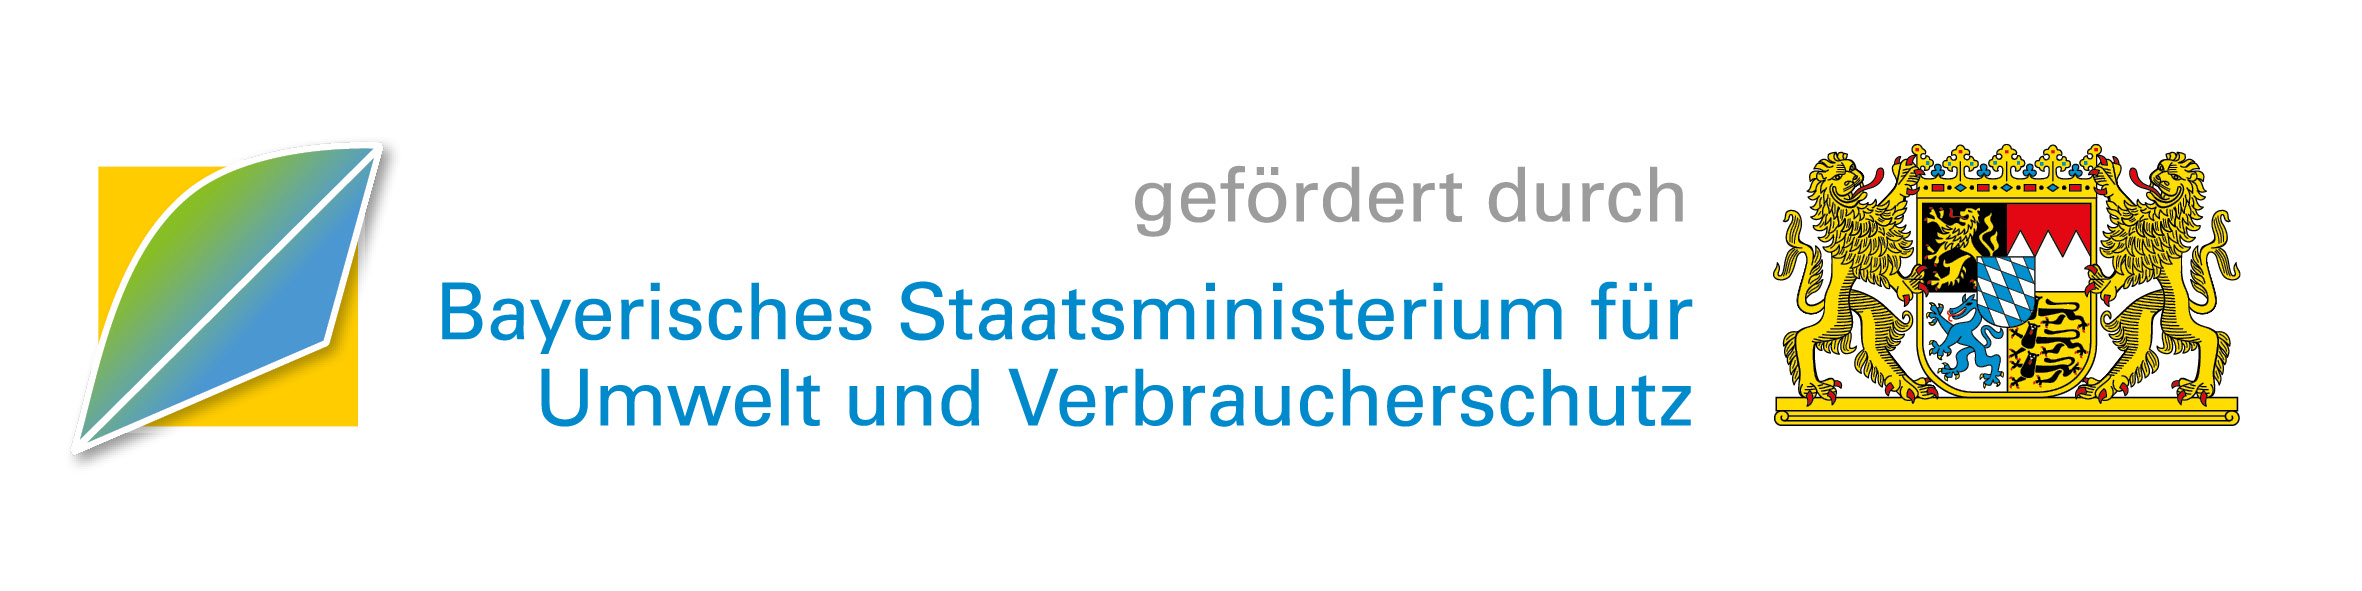 gefördert durch Bayerisches Staatsministerium für Umwelt und Verbraucherschutz